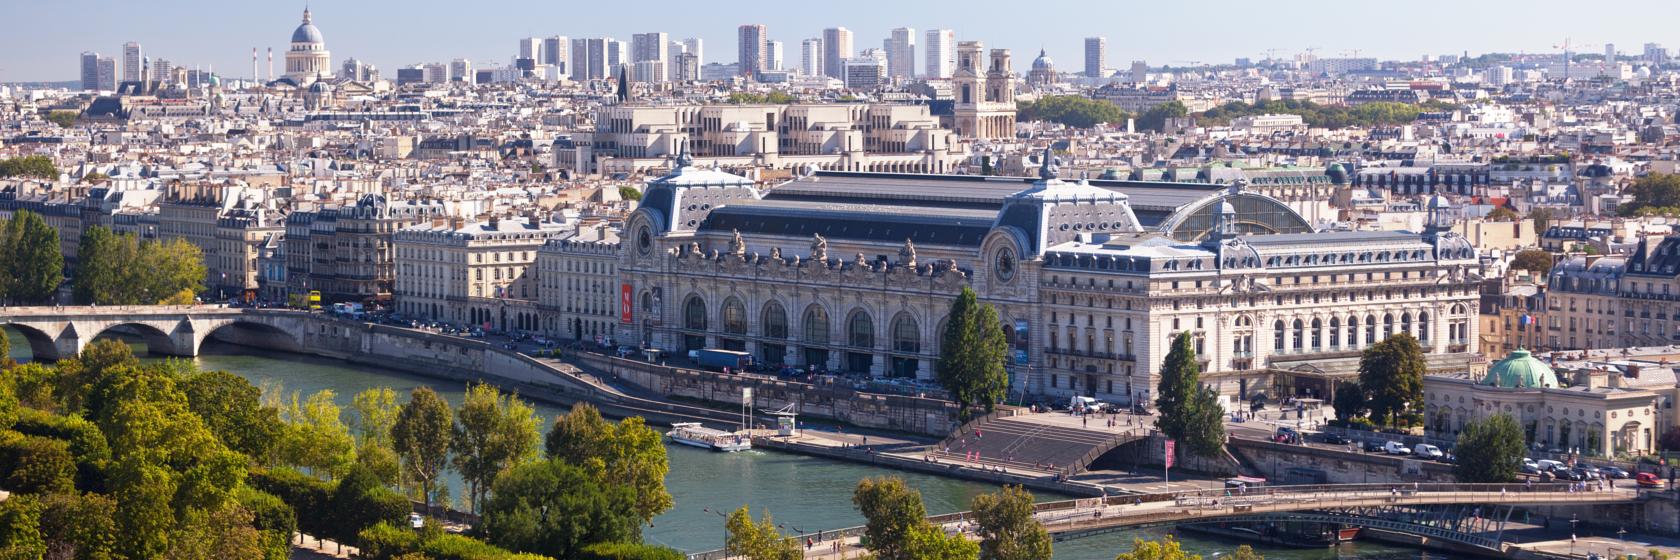 Saint Germain des Pres, Paris Hotels